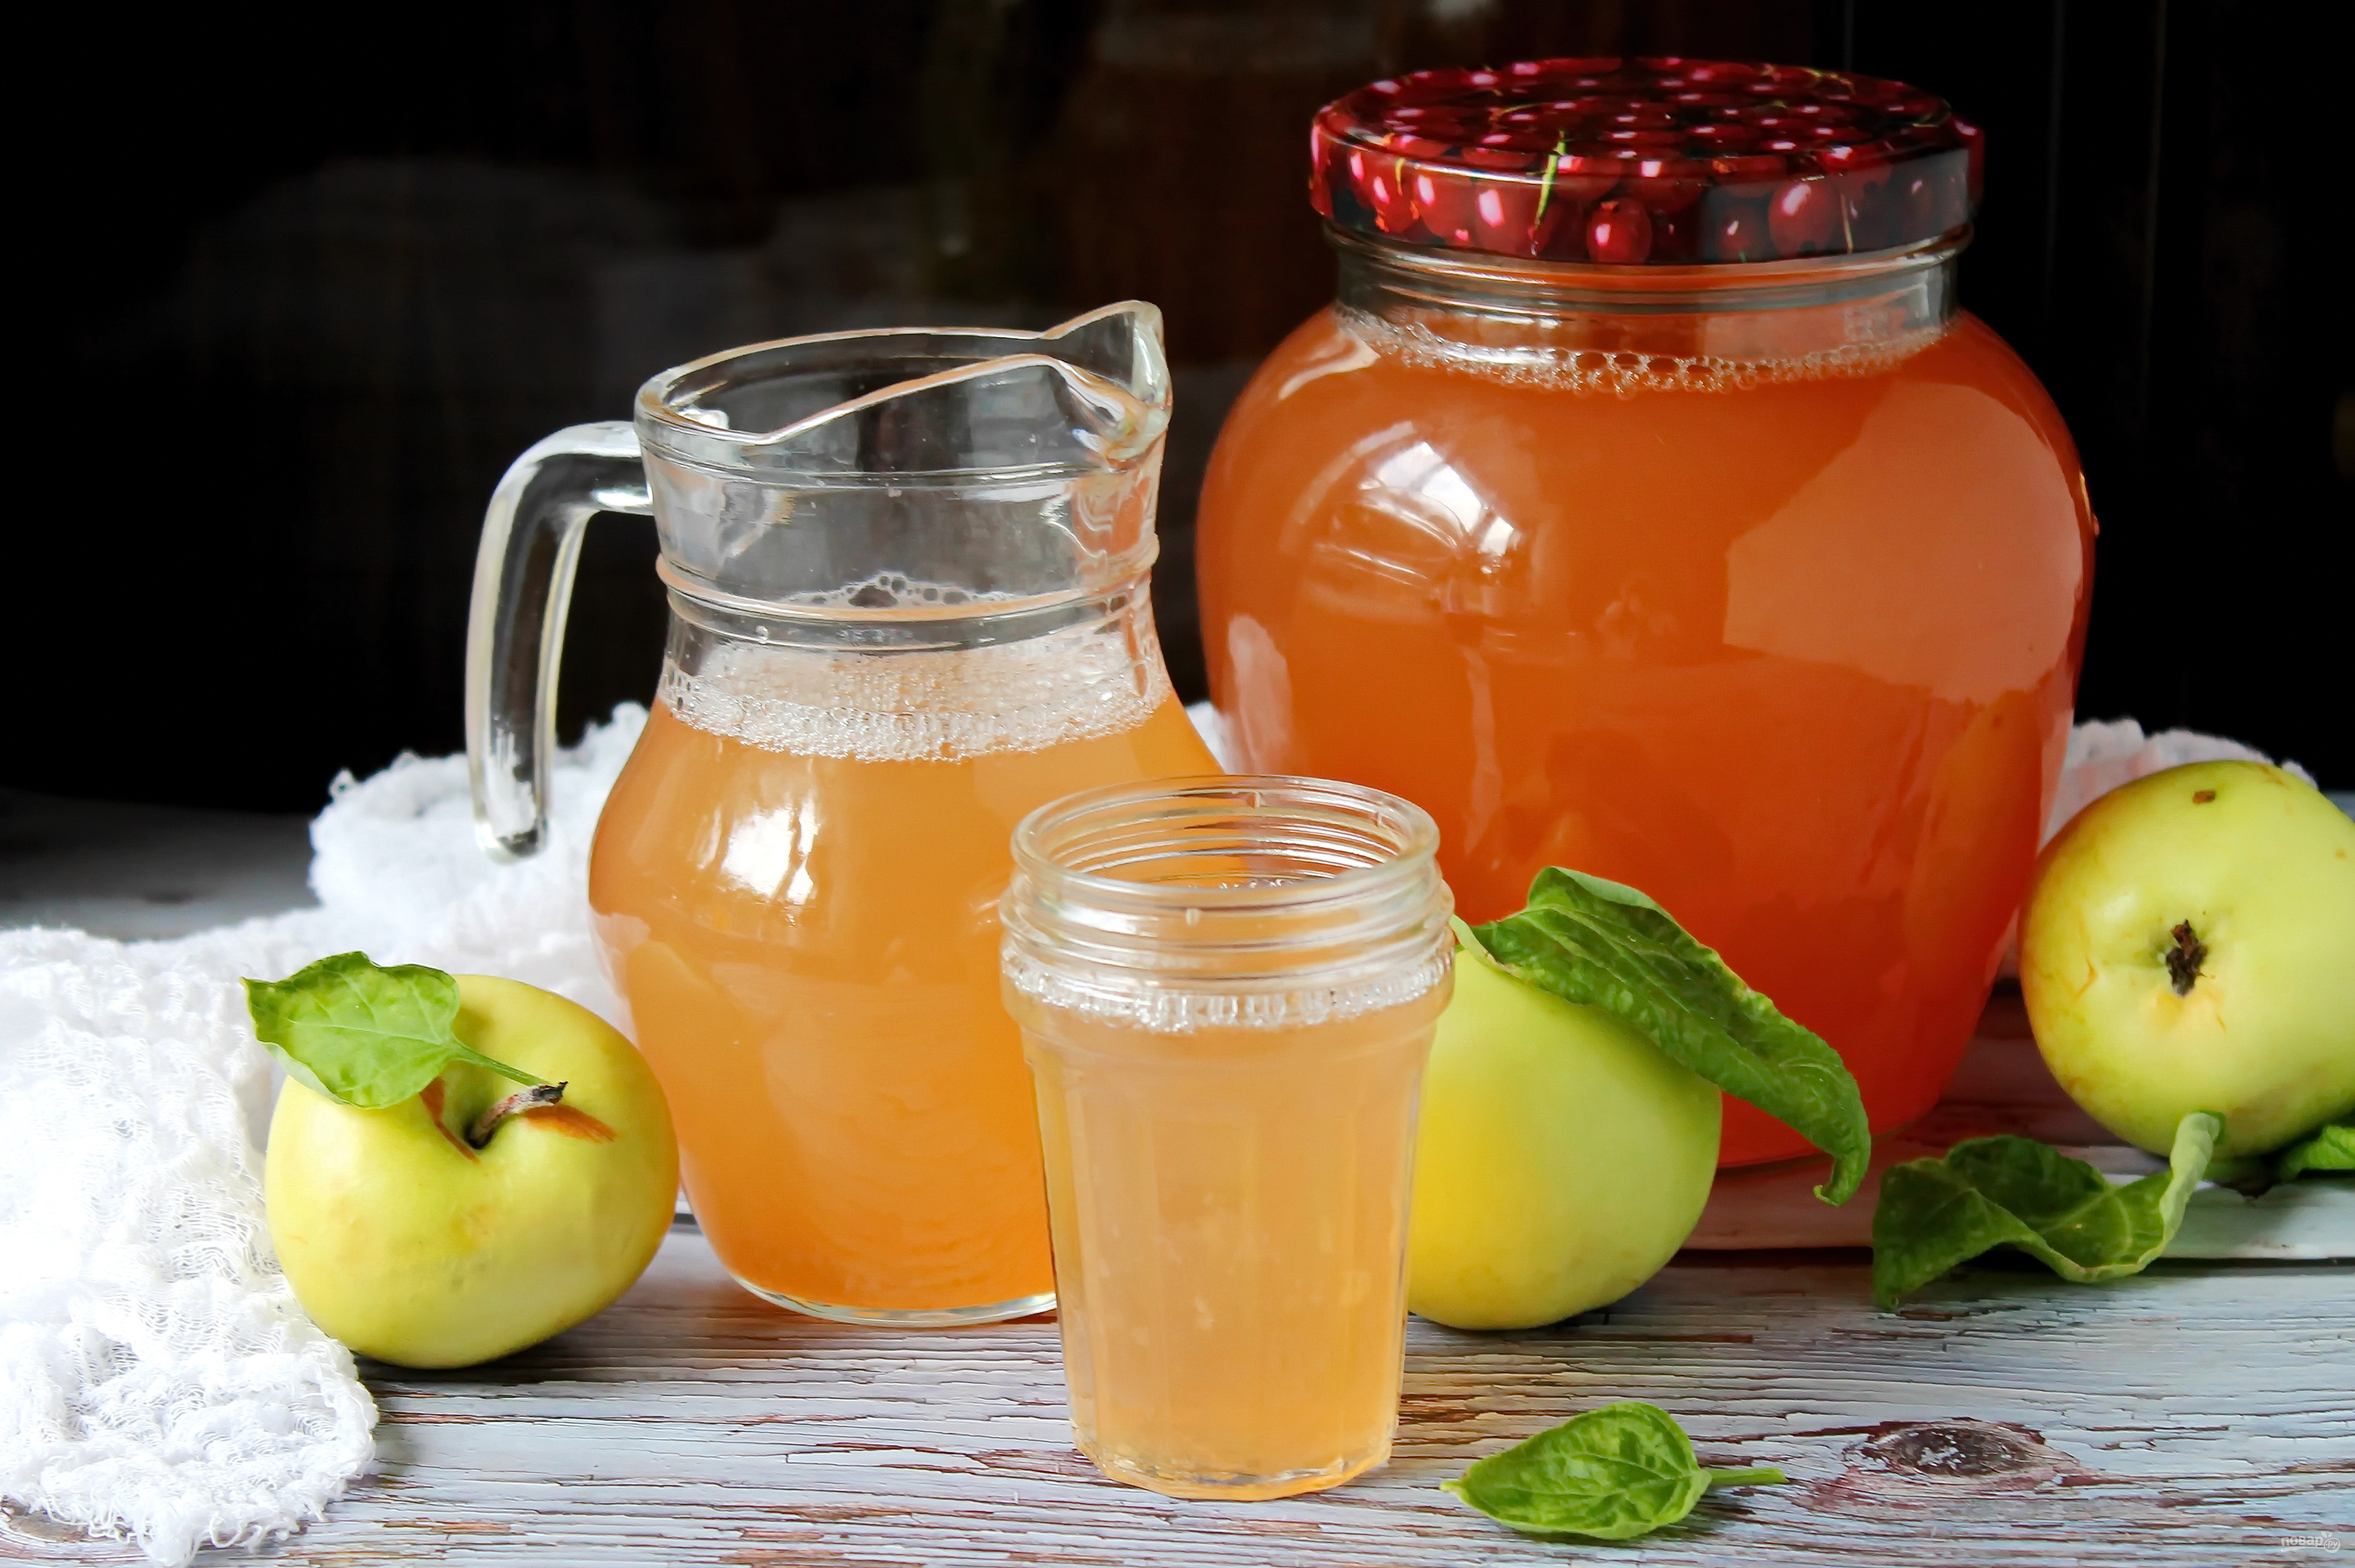 Яблочный сок вода сахар. Яблочный сок в соковарке. Домашний яблочный сок. Яблочный сок на зиму. Сок из яблок в соковарке на зиму.